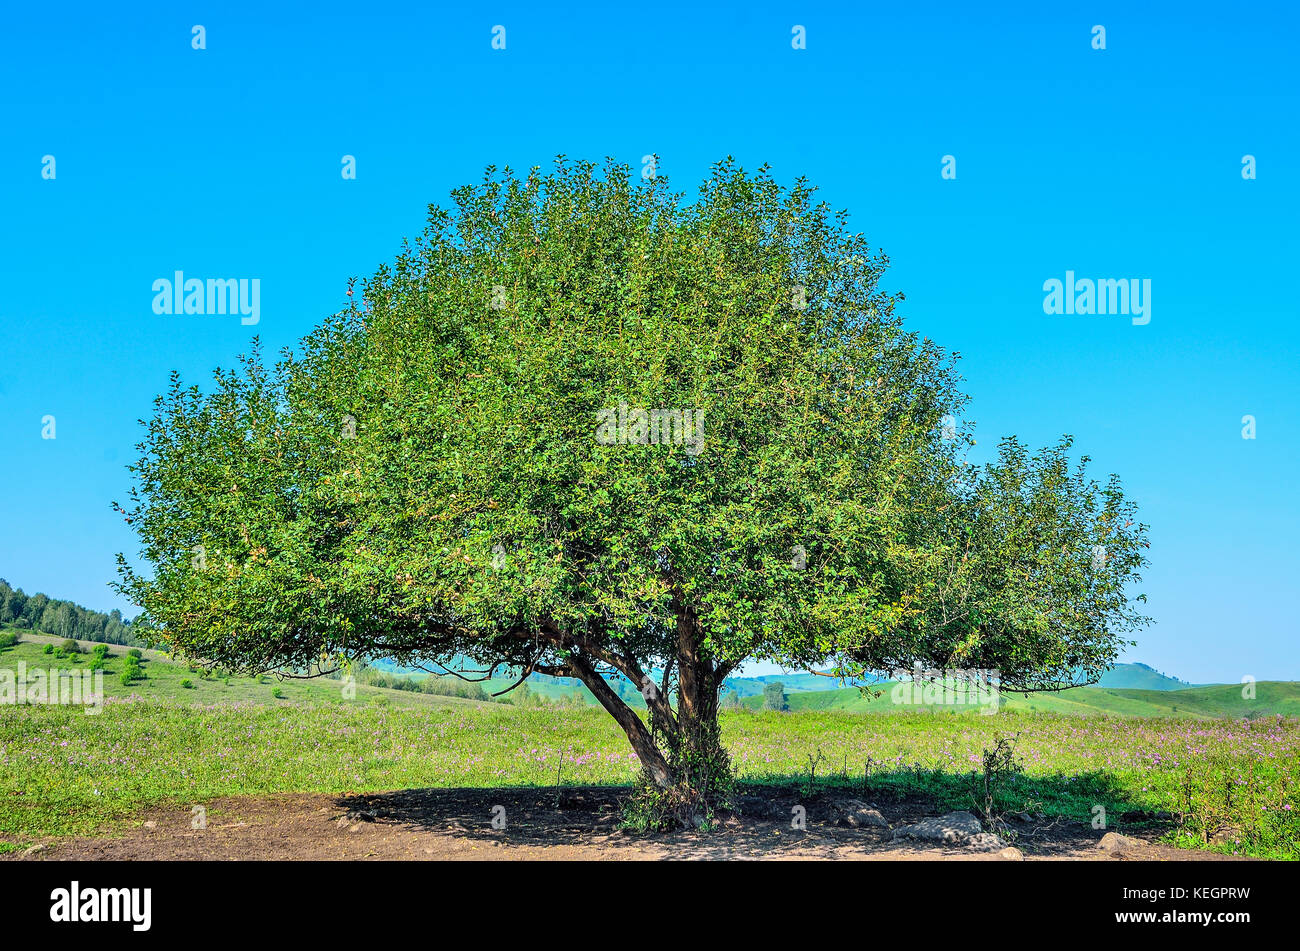 Lonely albero verde con vegetazione lussureggiante sul prato fiorito nella valle di montagna - luminoso paesaggio estivo con colore blu cielo chiaro Foto Stock